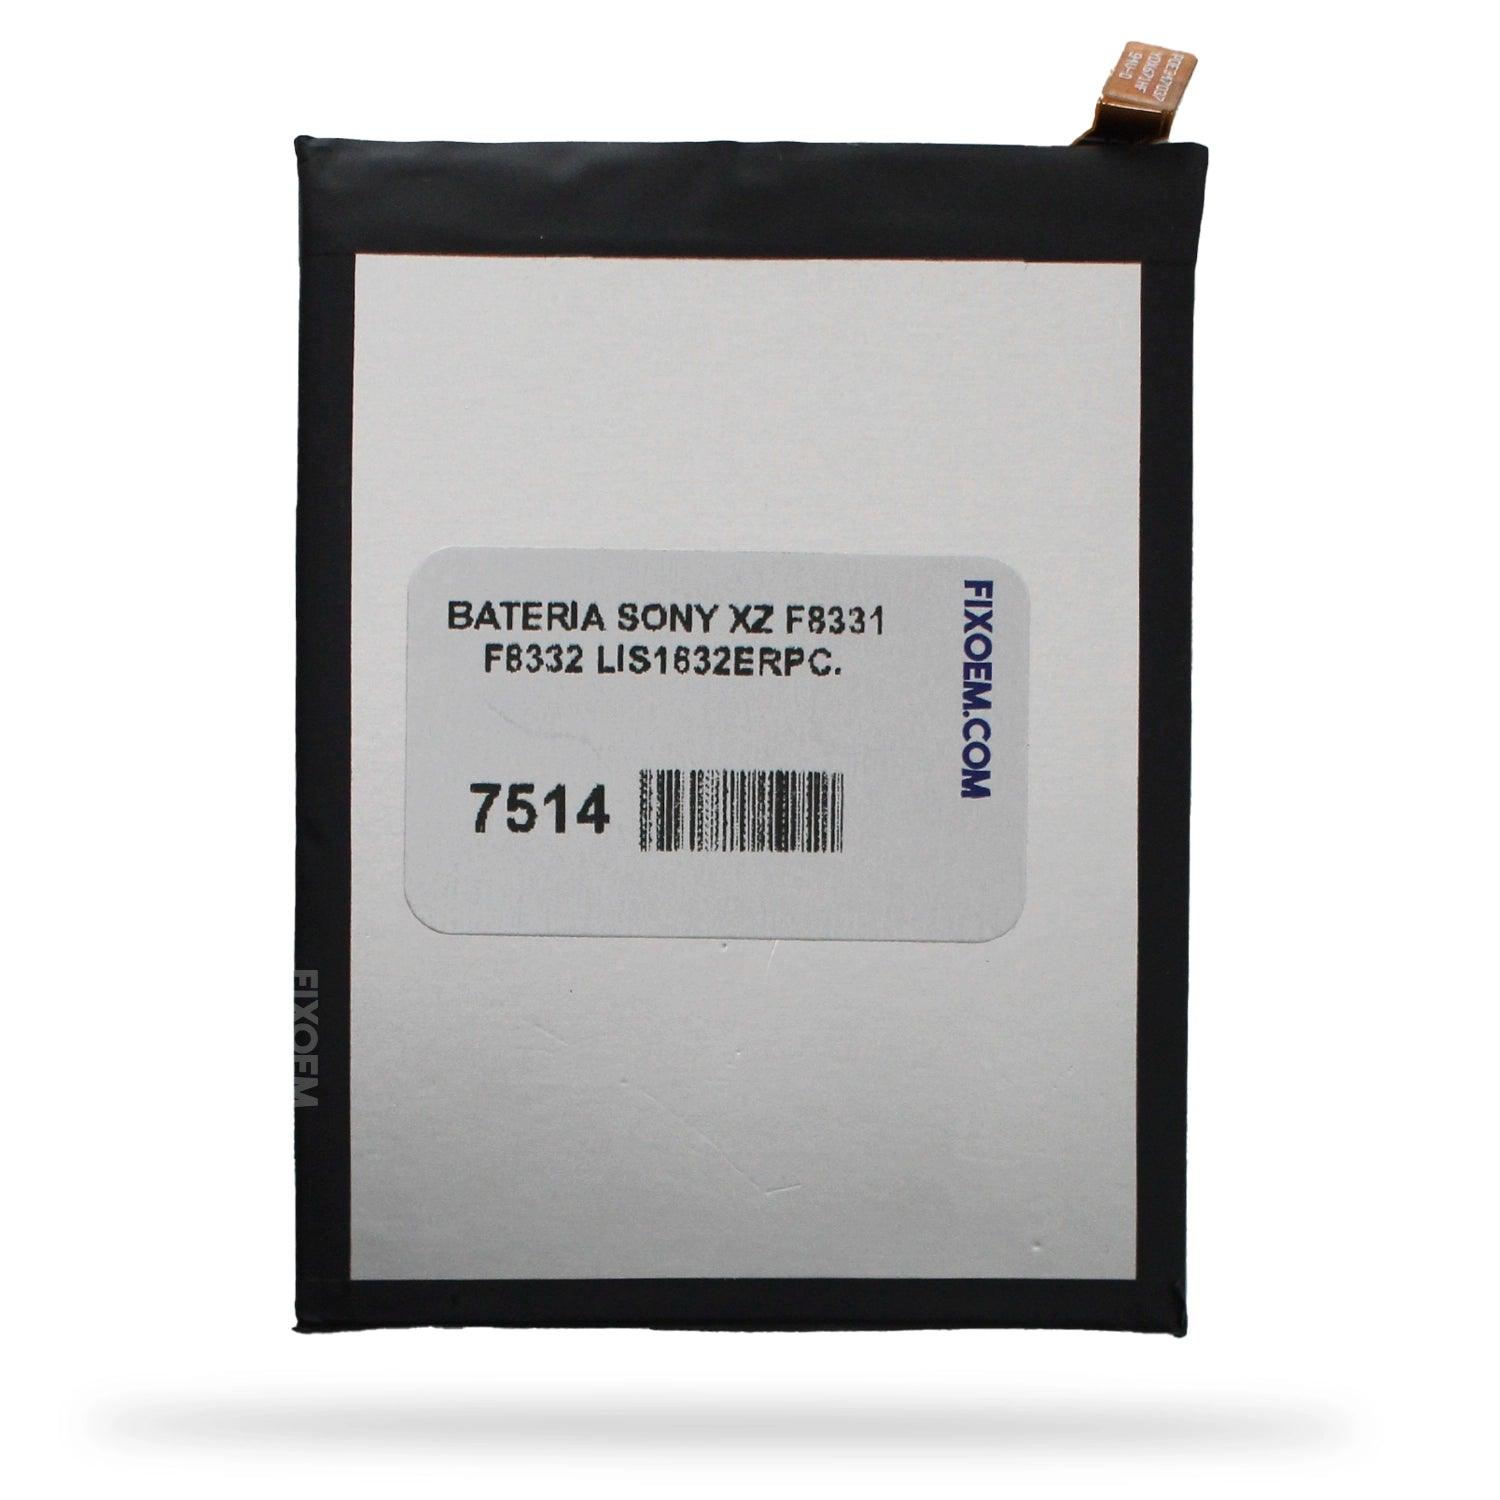 Bateria Sony Xz F8331 F8332 Lis1632Erpc. a solo $ 130.00 Refaccion y puestos celulares, refurbish y microelectronica.- FixOEM